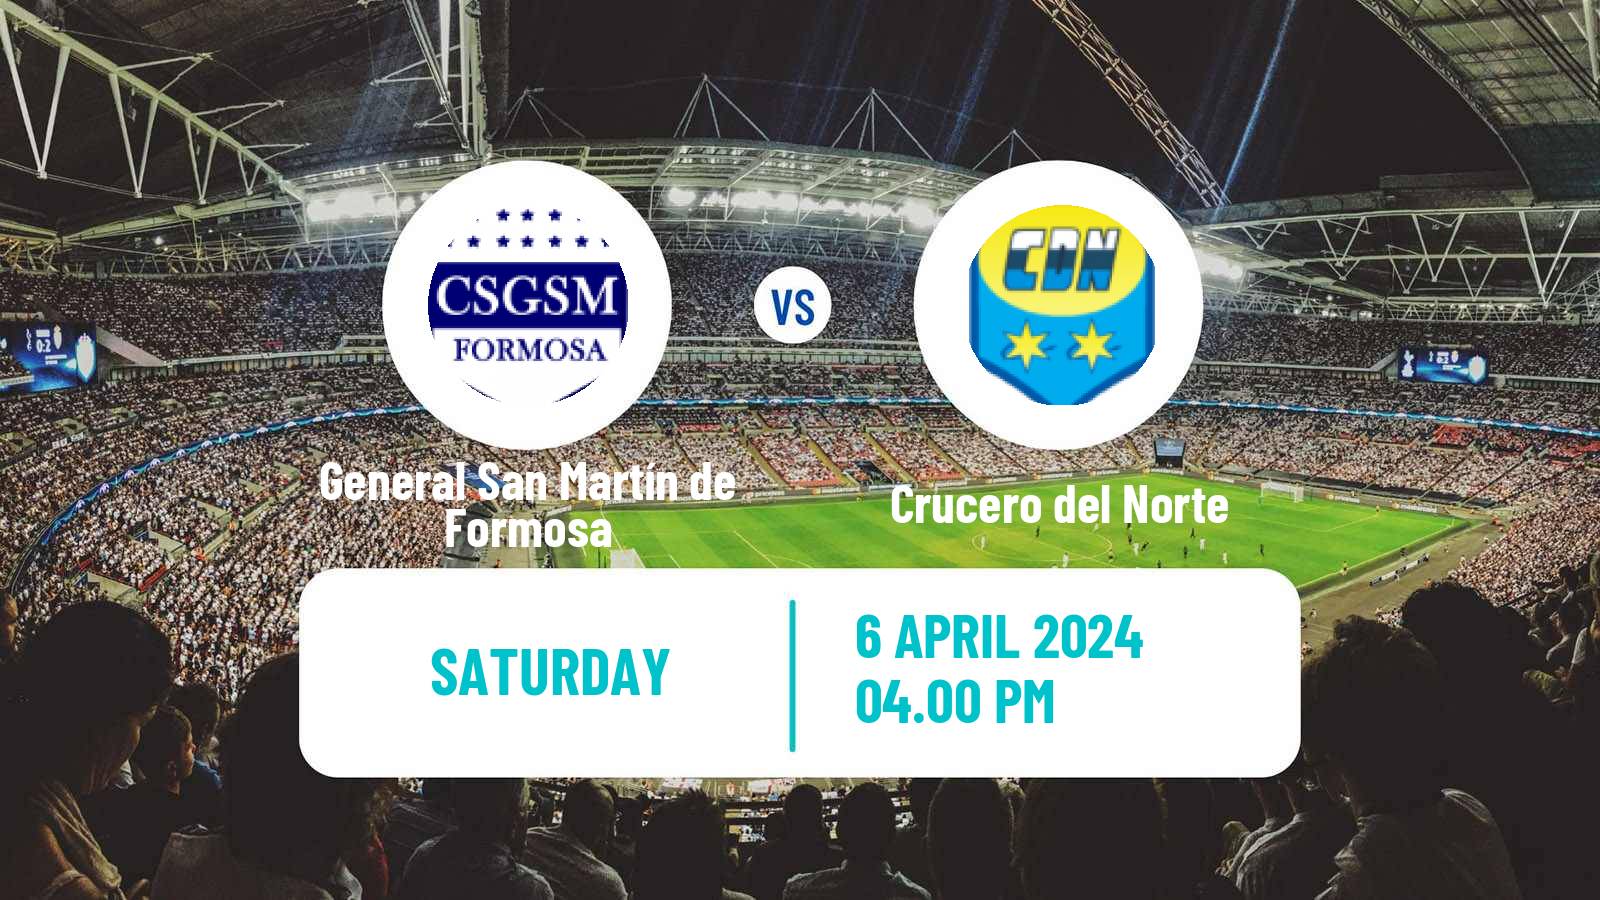 Soccer Argentinian Torneo Federal General San Martín de Formosa - Crucero del Norte